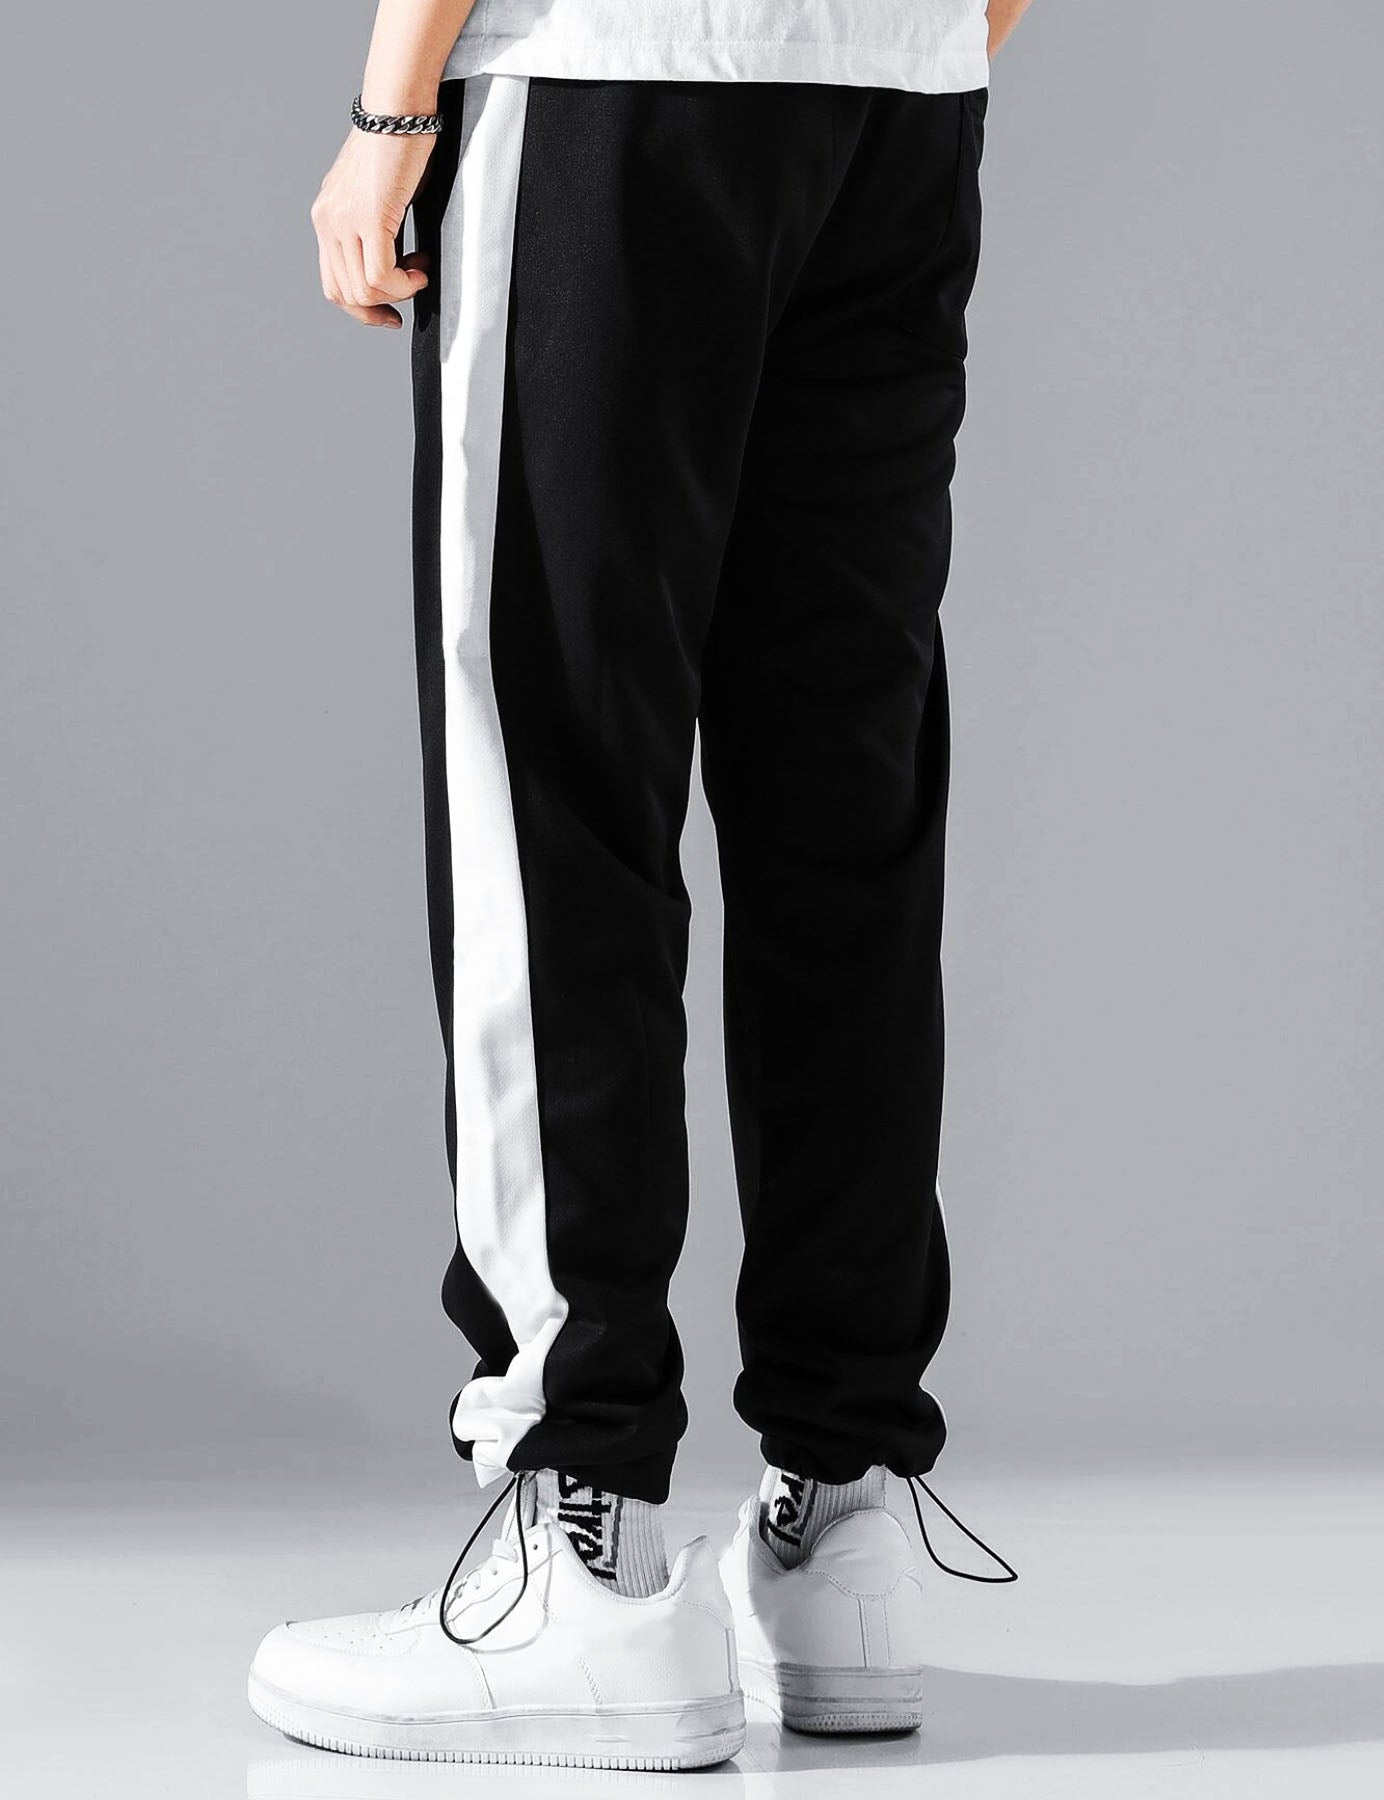 Black & White Track pants for Men